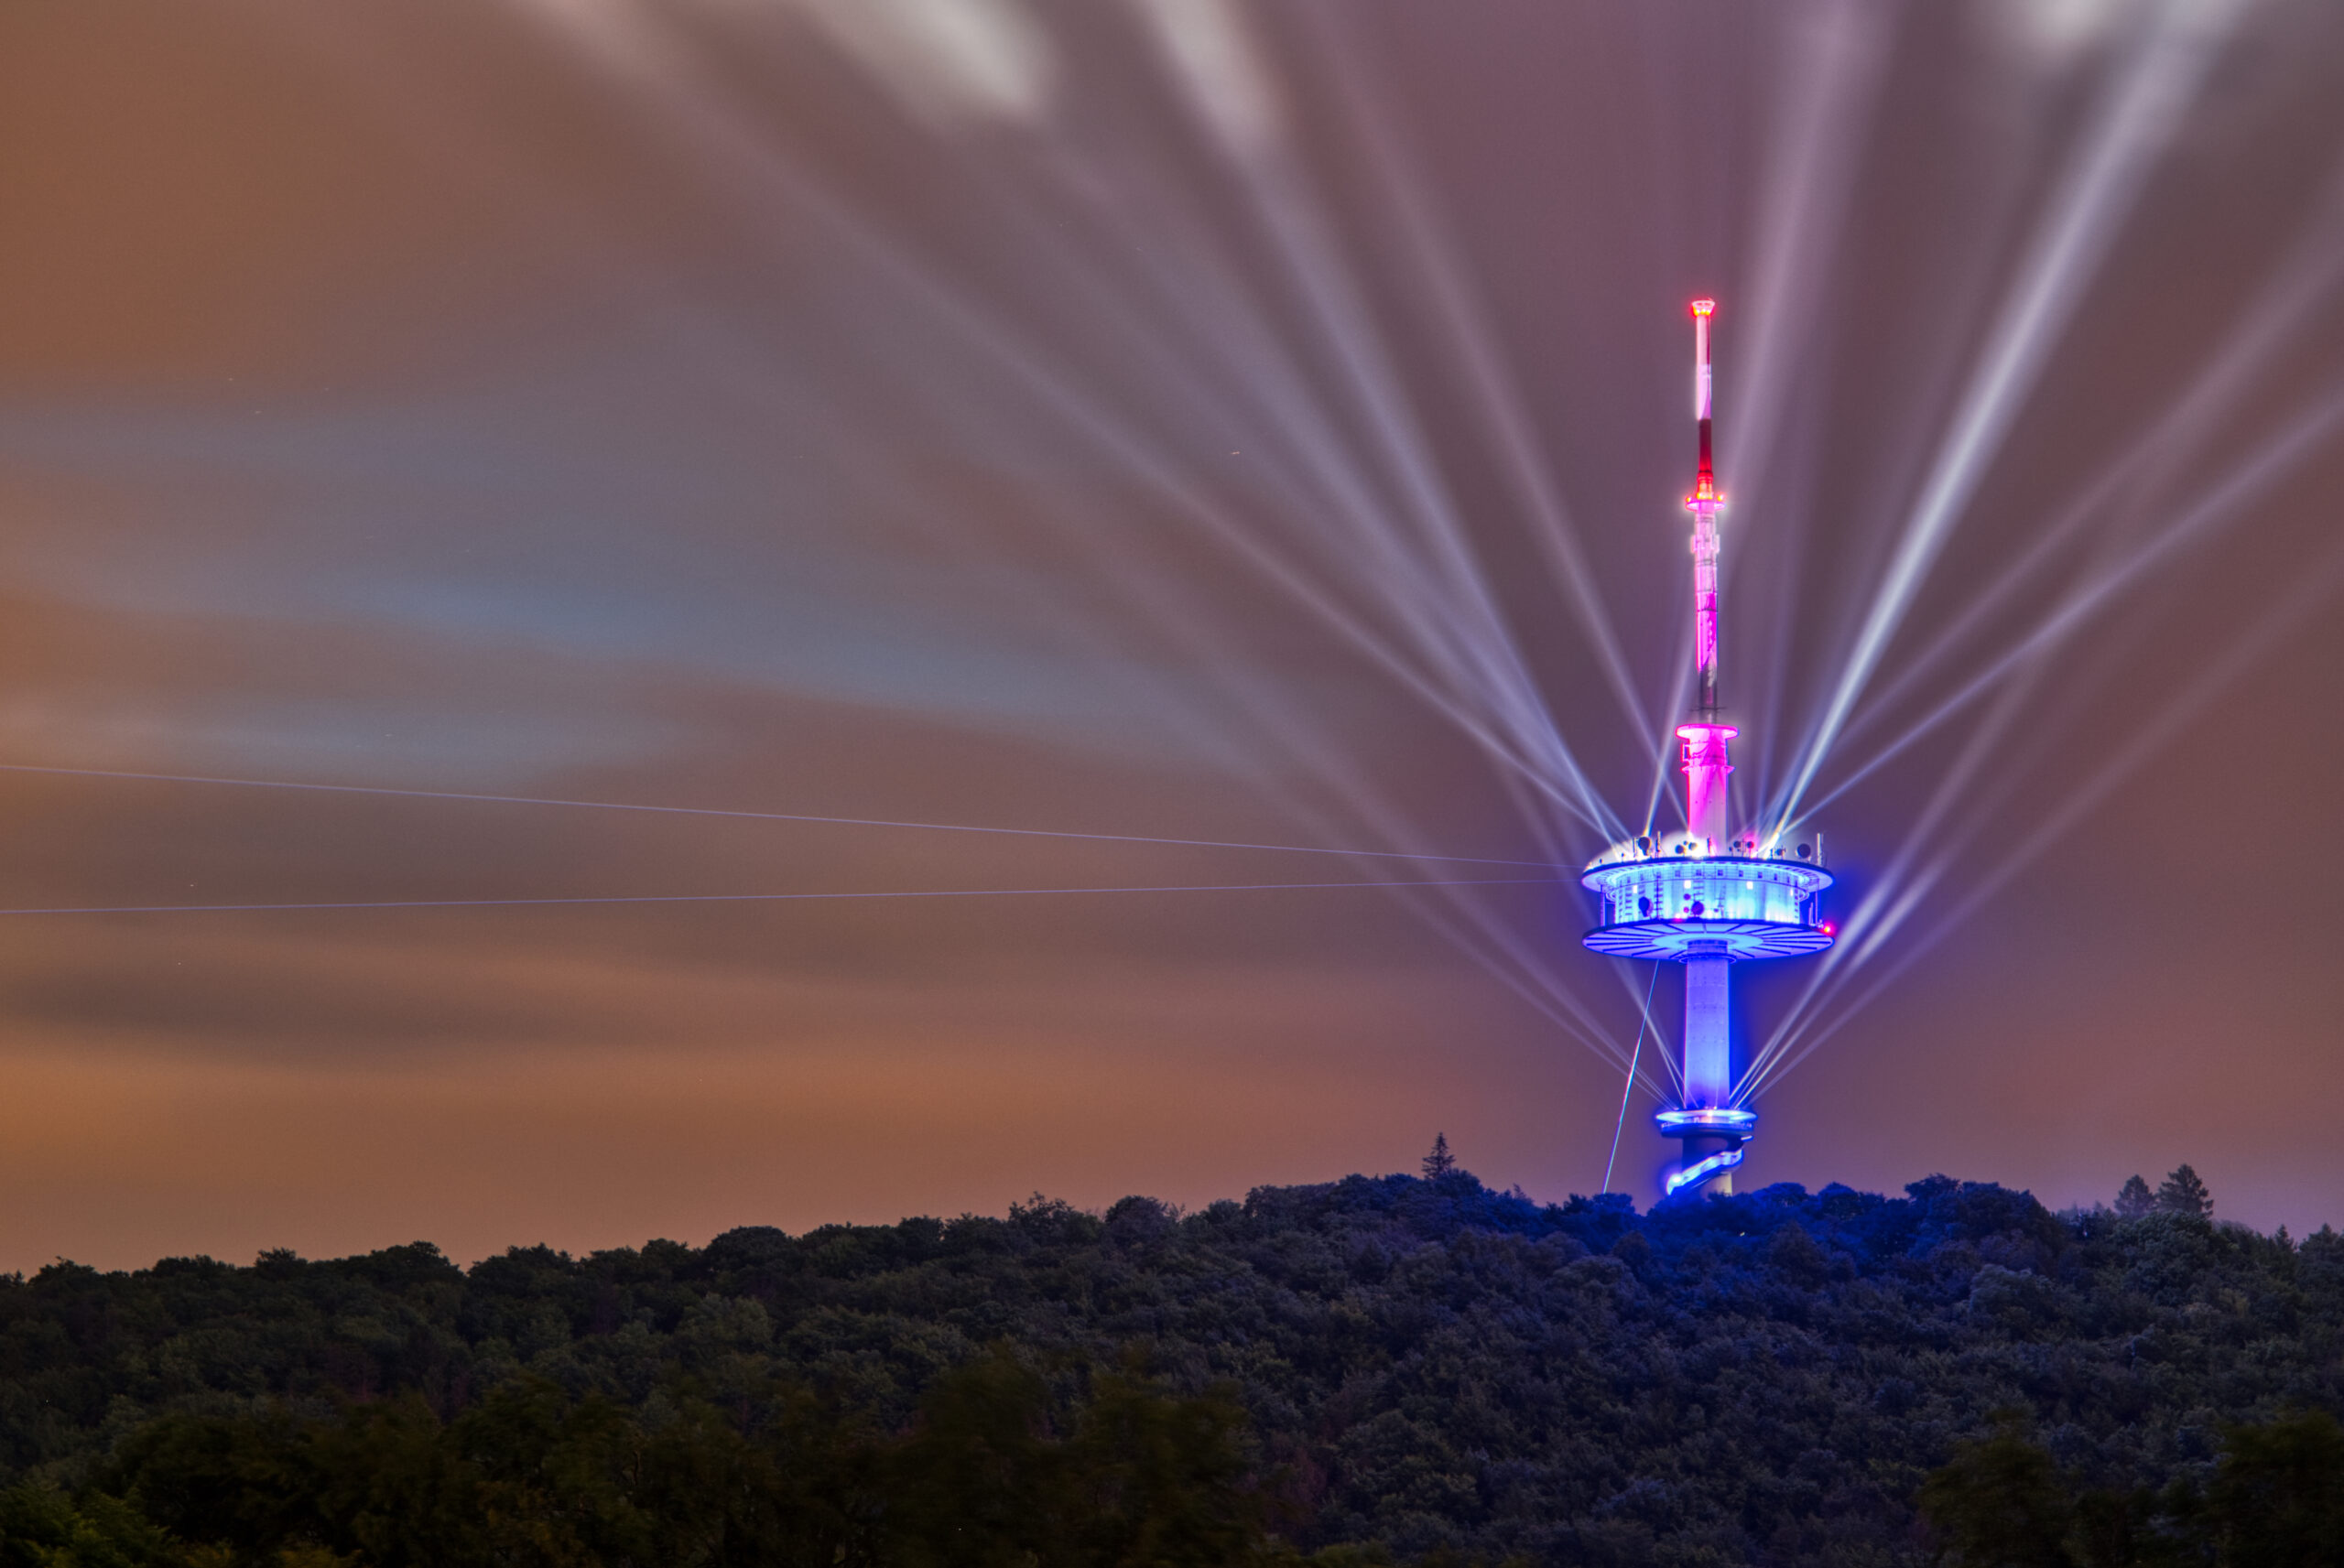 Der Fernsehturm Porta Westfalica wird zum Leuchtsignal für #kulturerhalten. In bunten Farben erstrahlt der Fernmeldeturm auf dem Jakobsberg und wirft sein Licht auf Kultureinrichtungen im Mühlenkreis.